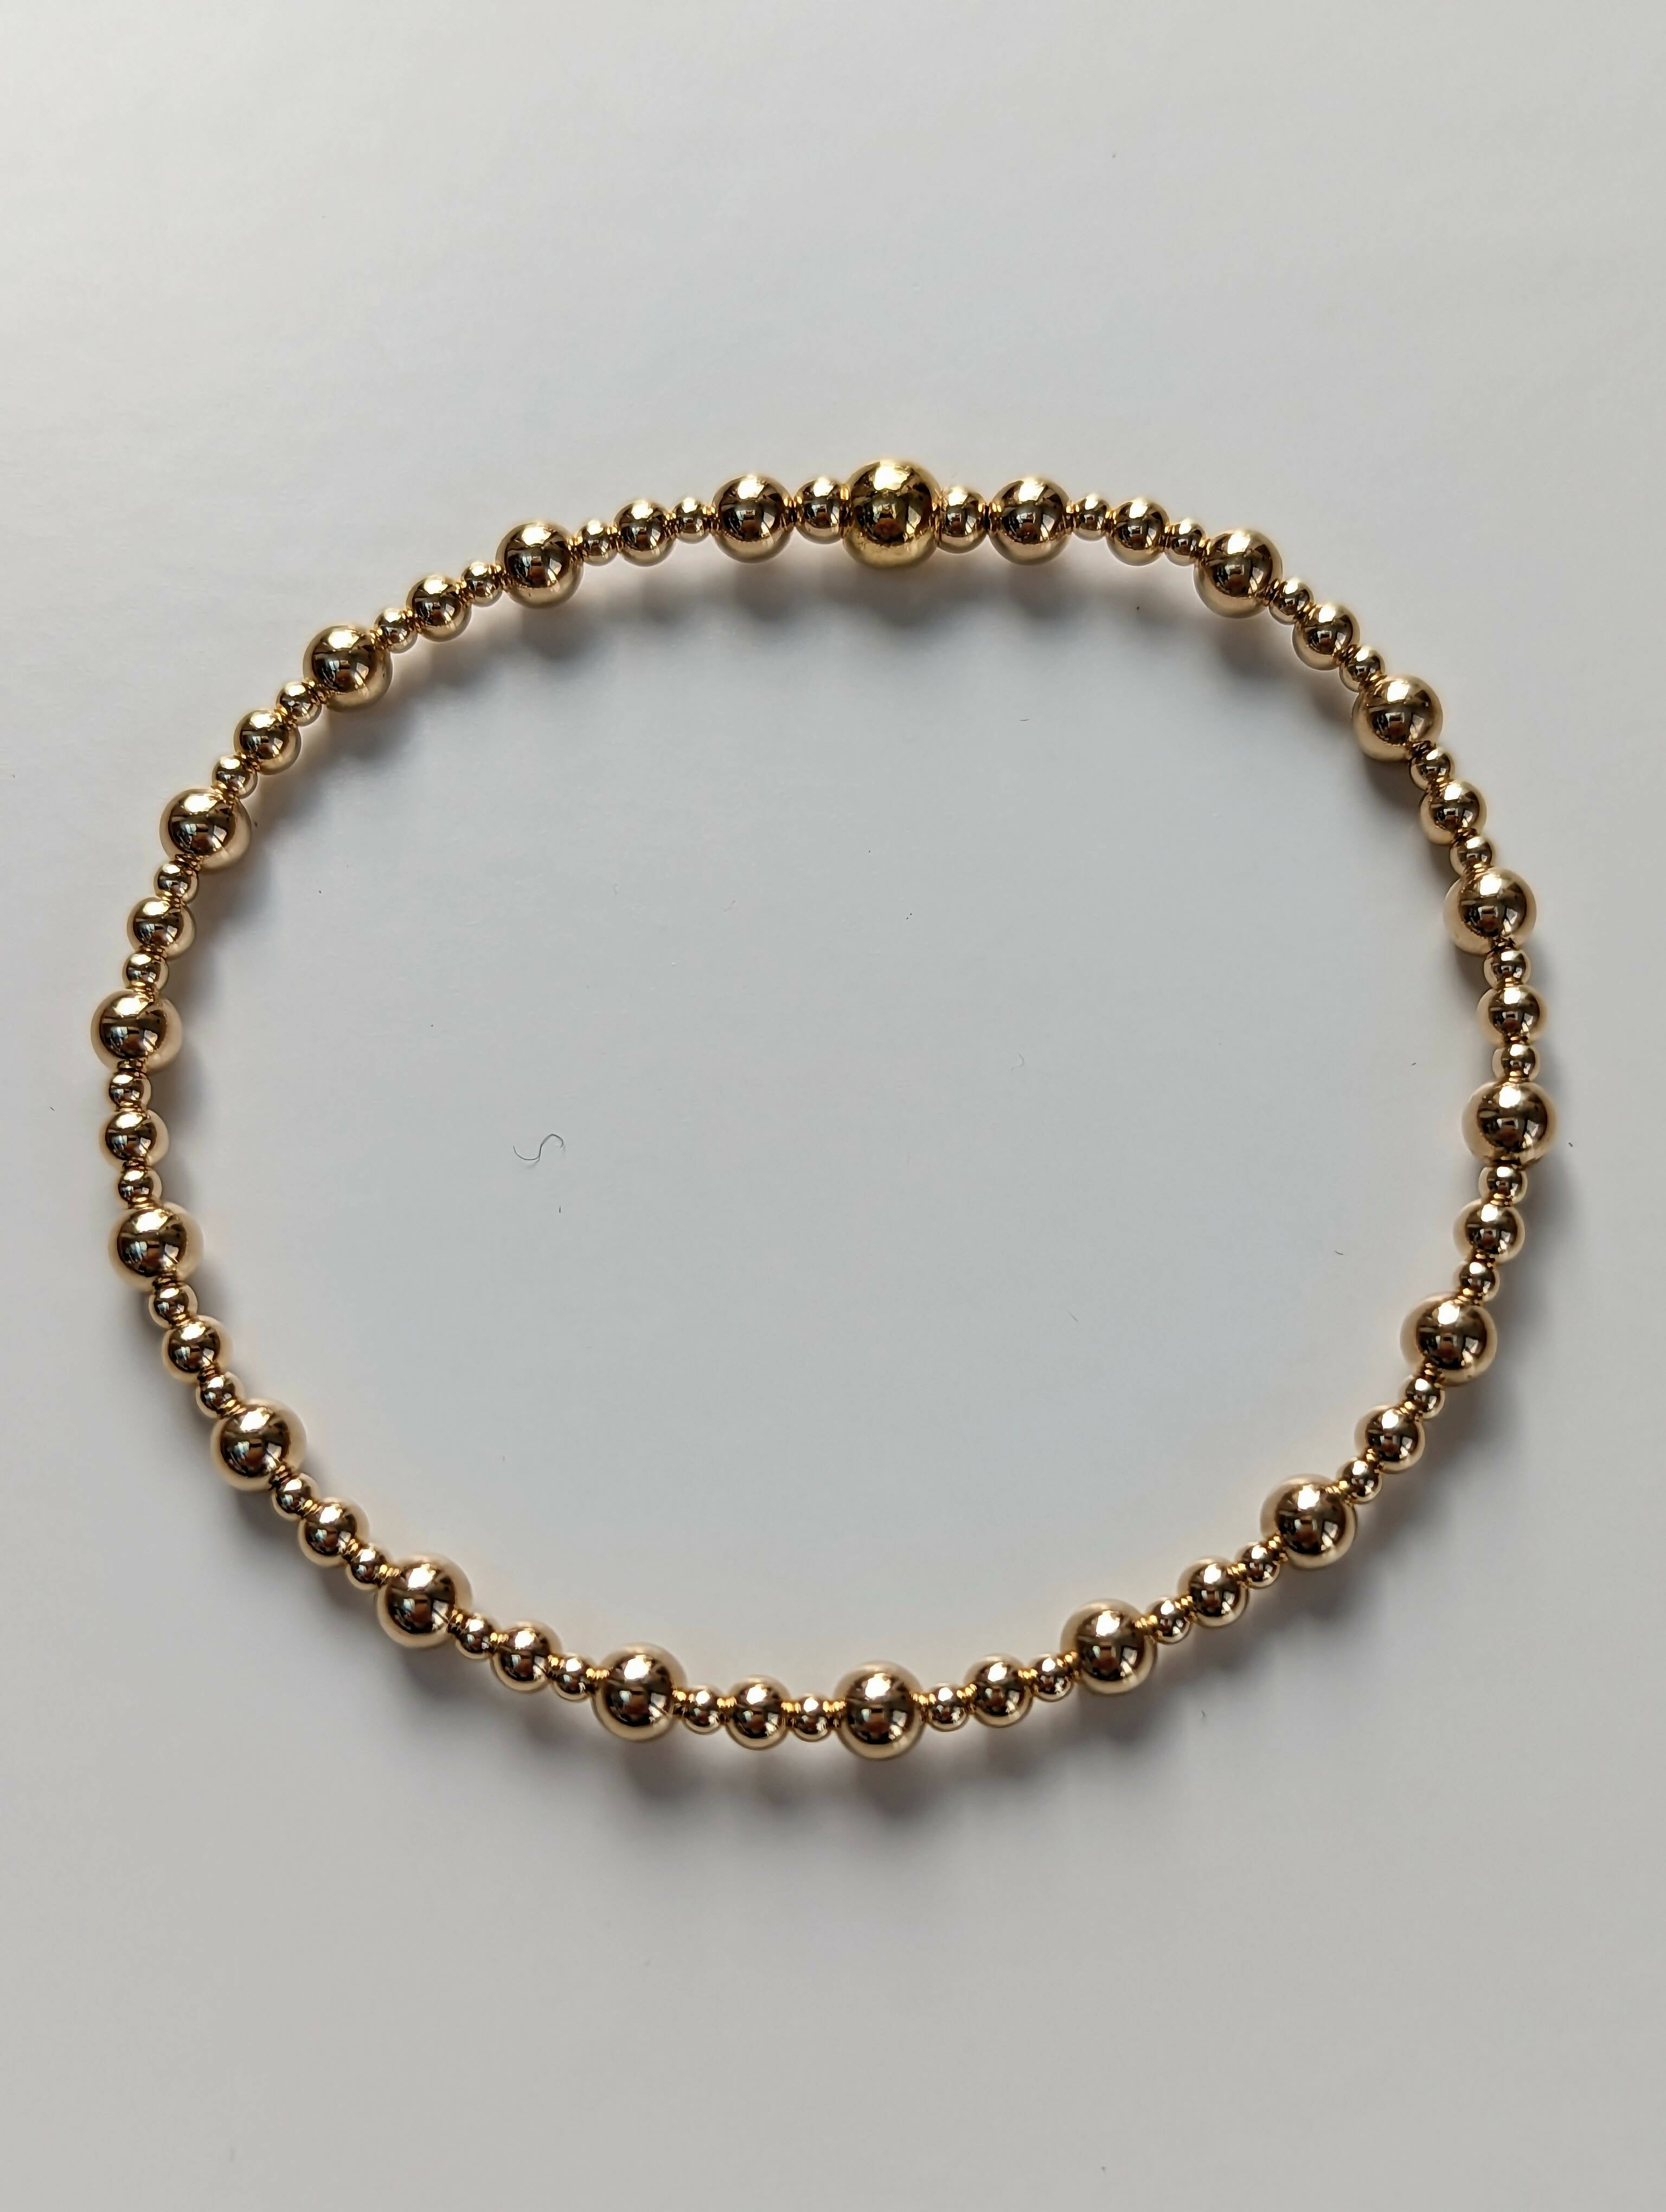 Skinny stacking bracelet - Handmade